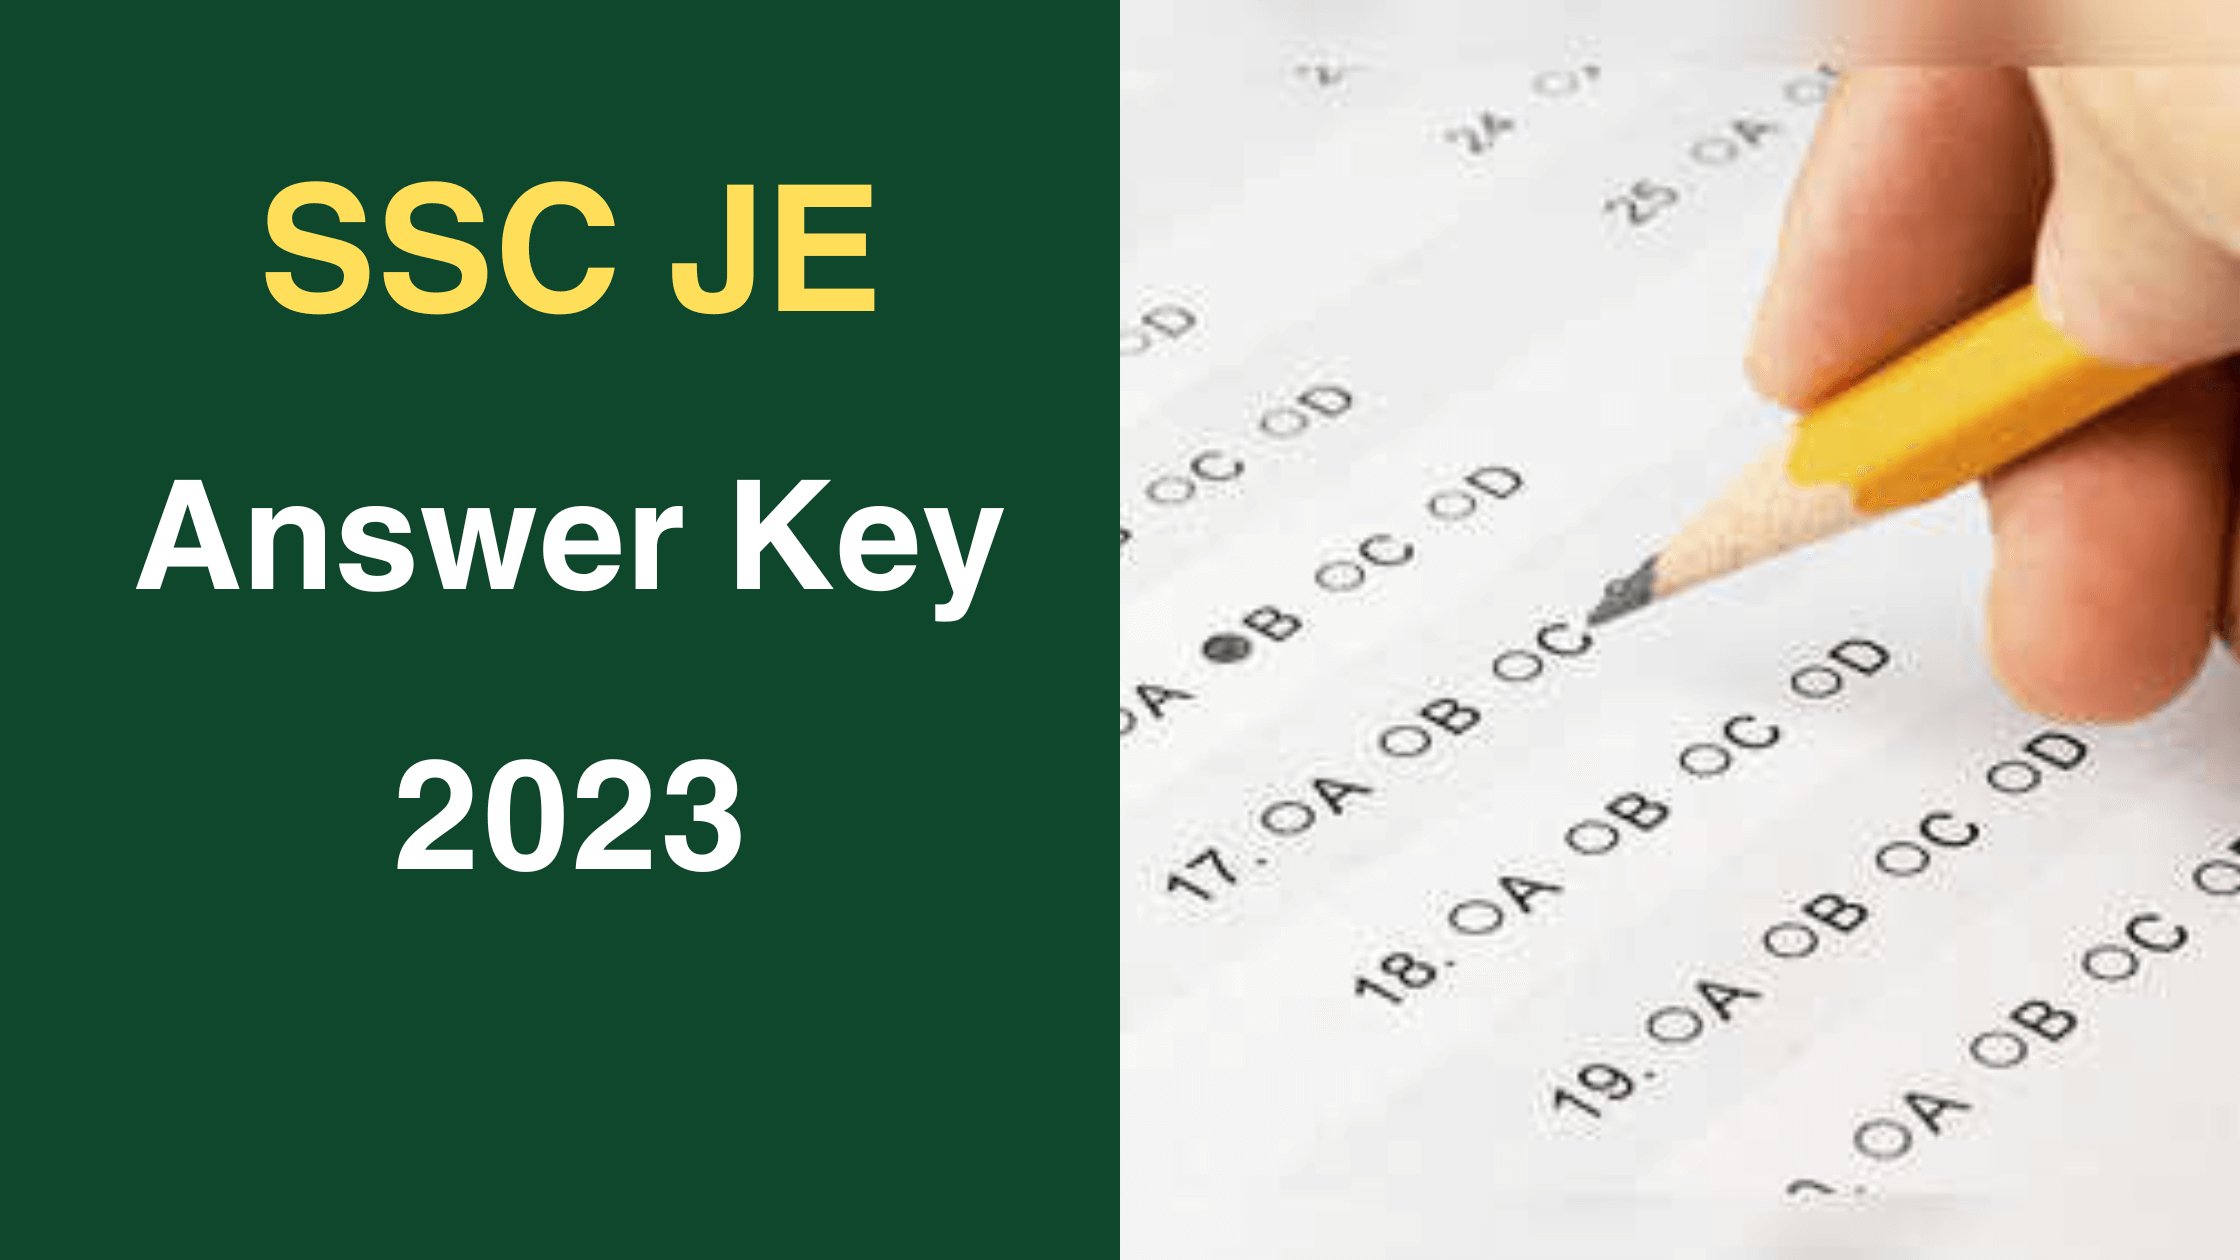 SSC JE Answer Key 2023